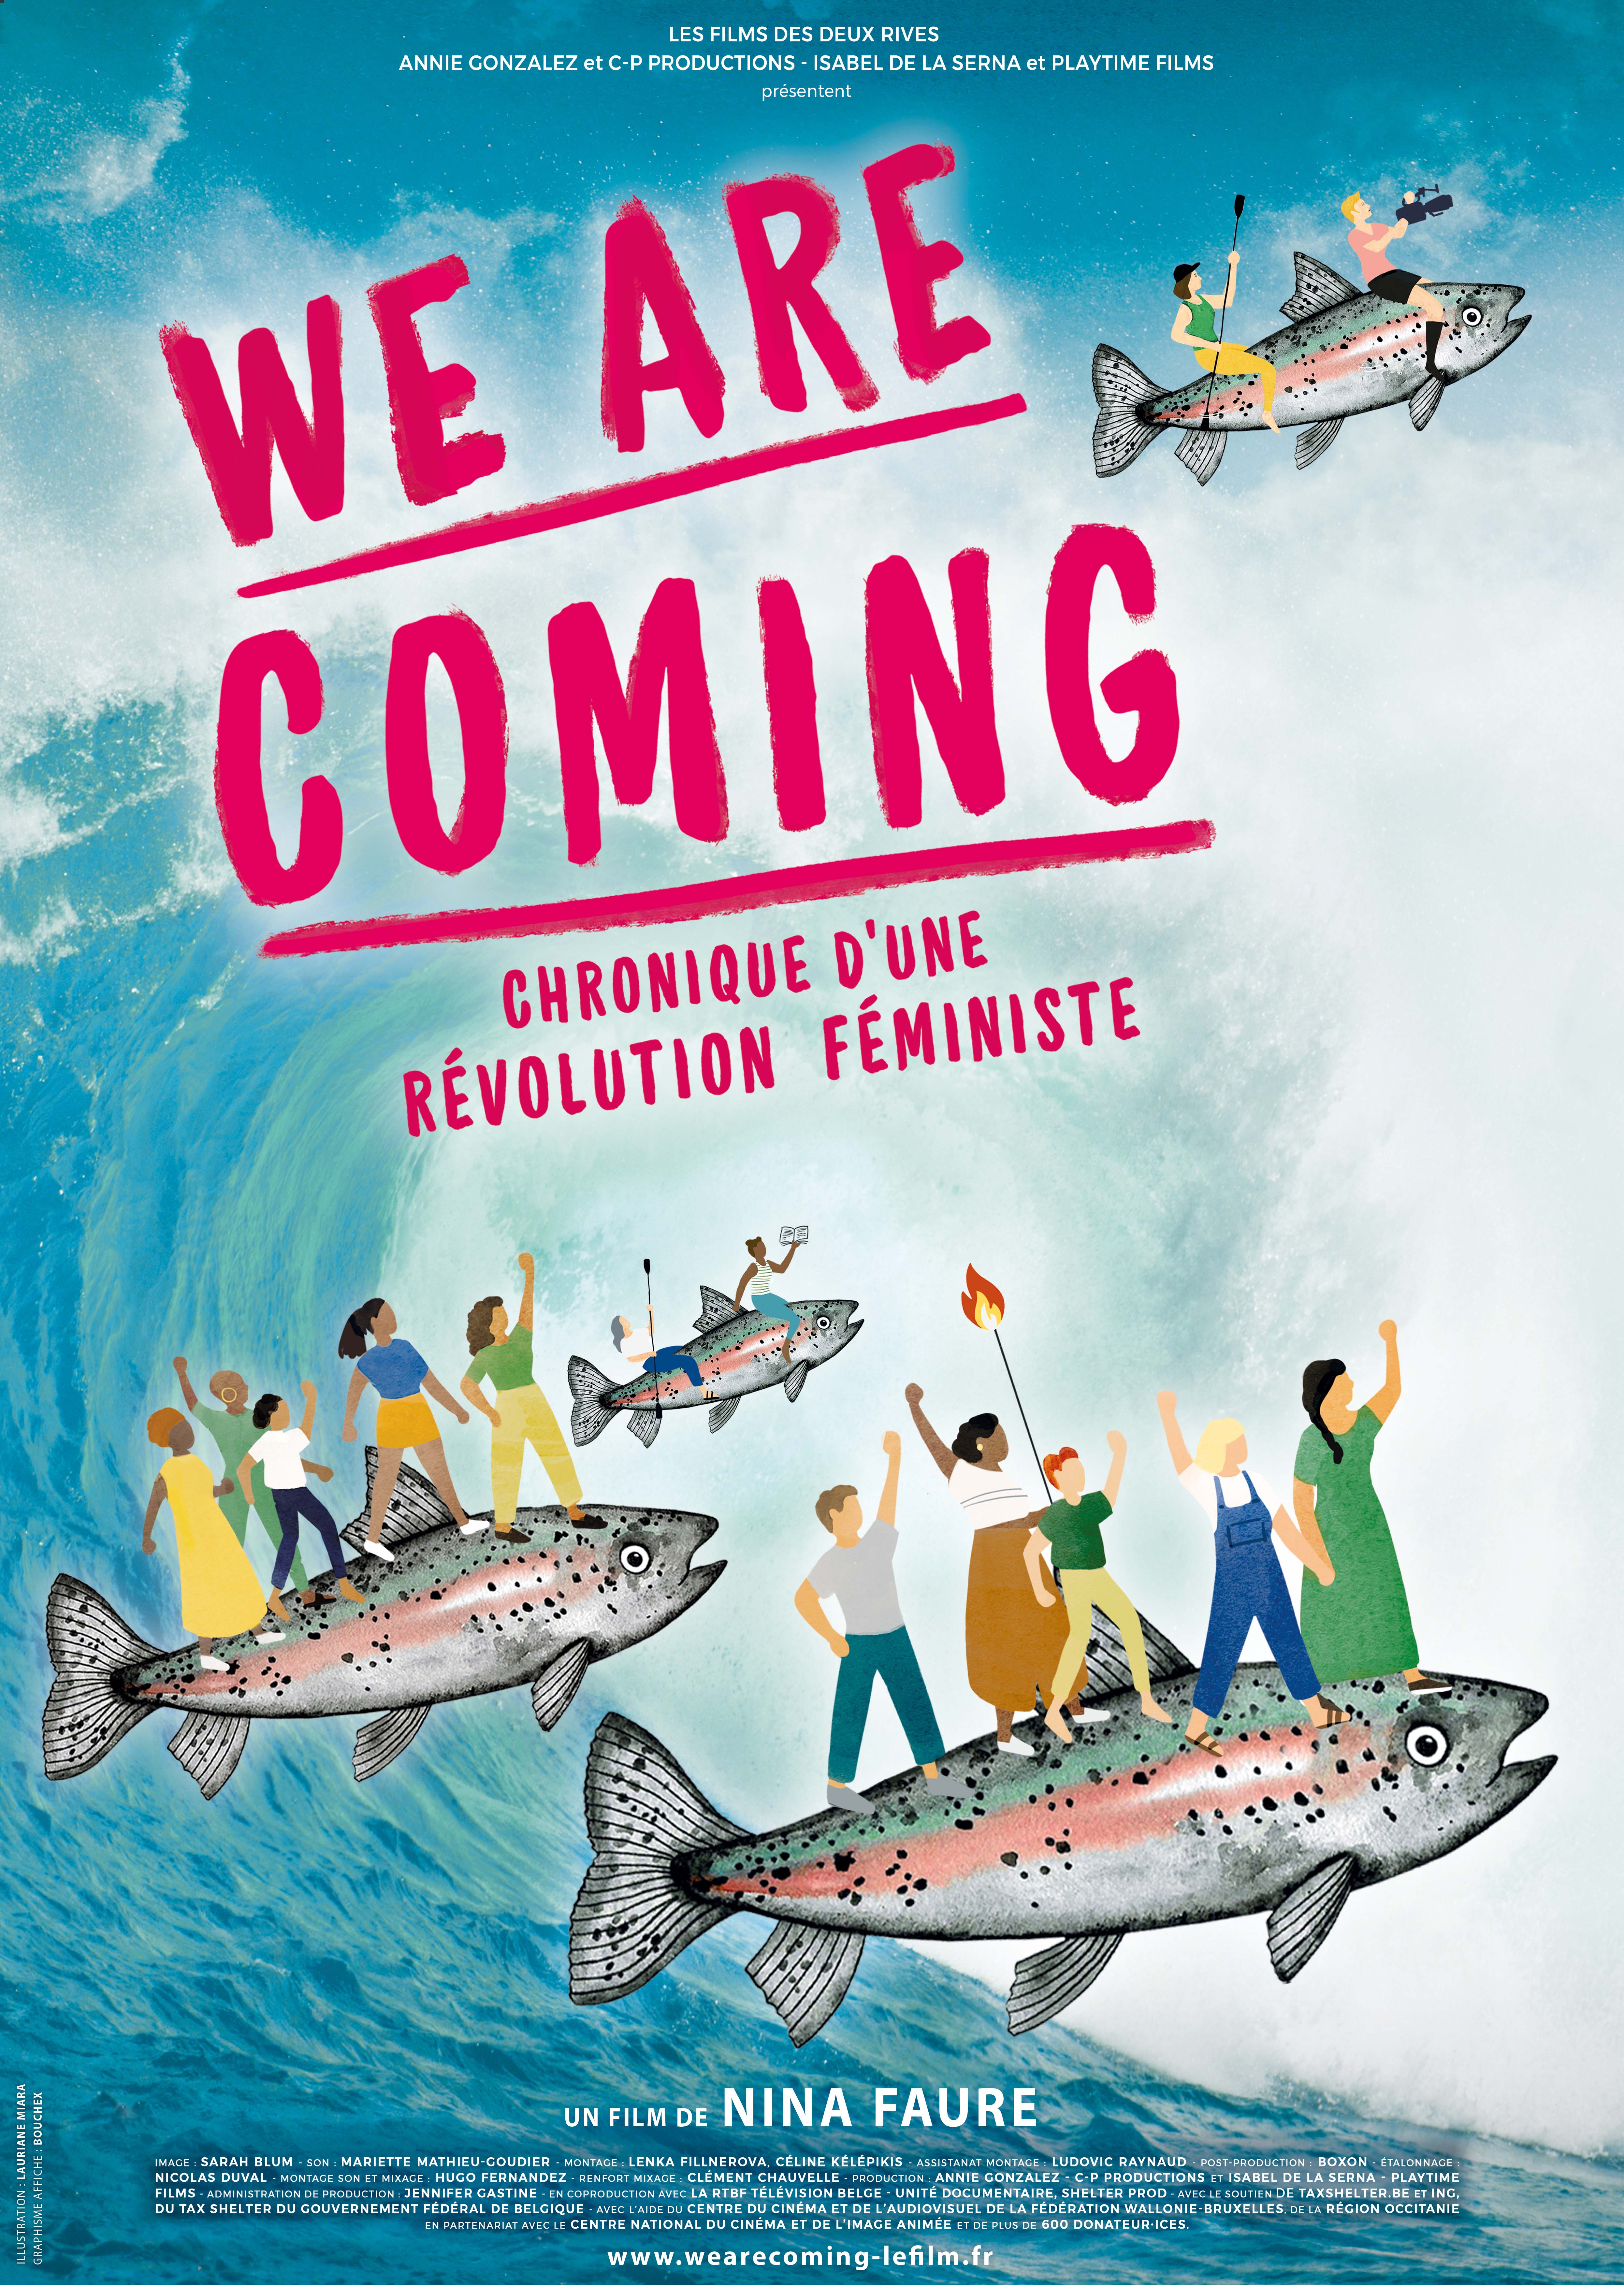 Affiche du film - We are coming, chronique d'une révolution féministe de Nina Faure © C-P Productions - Illustration :  Lauriane Miara / Graphisme : Bouchex